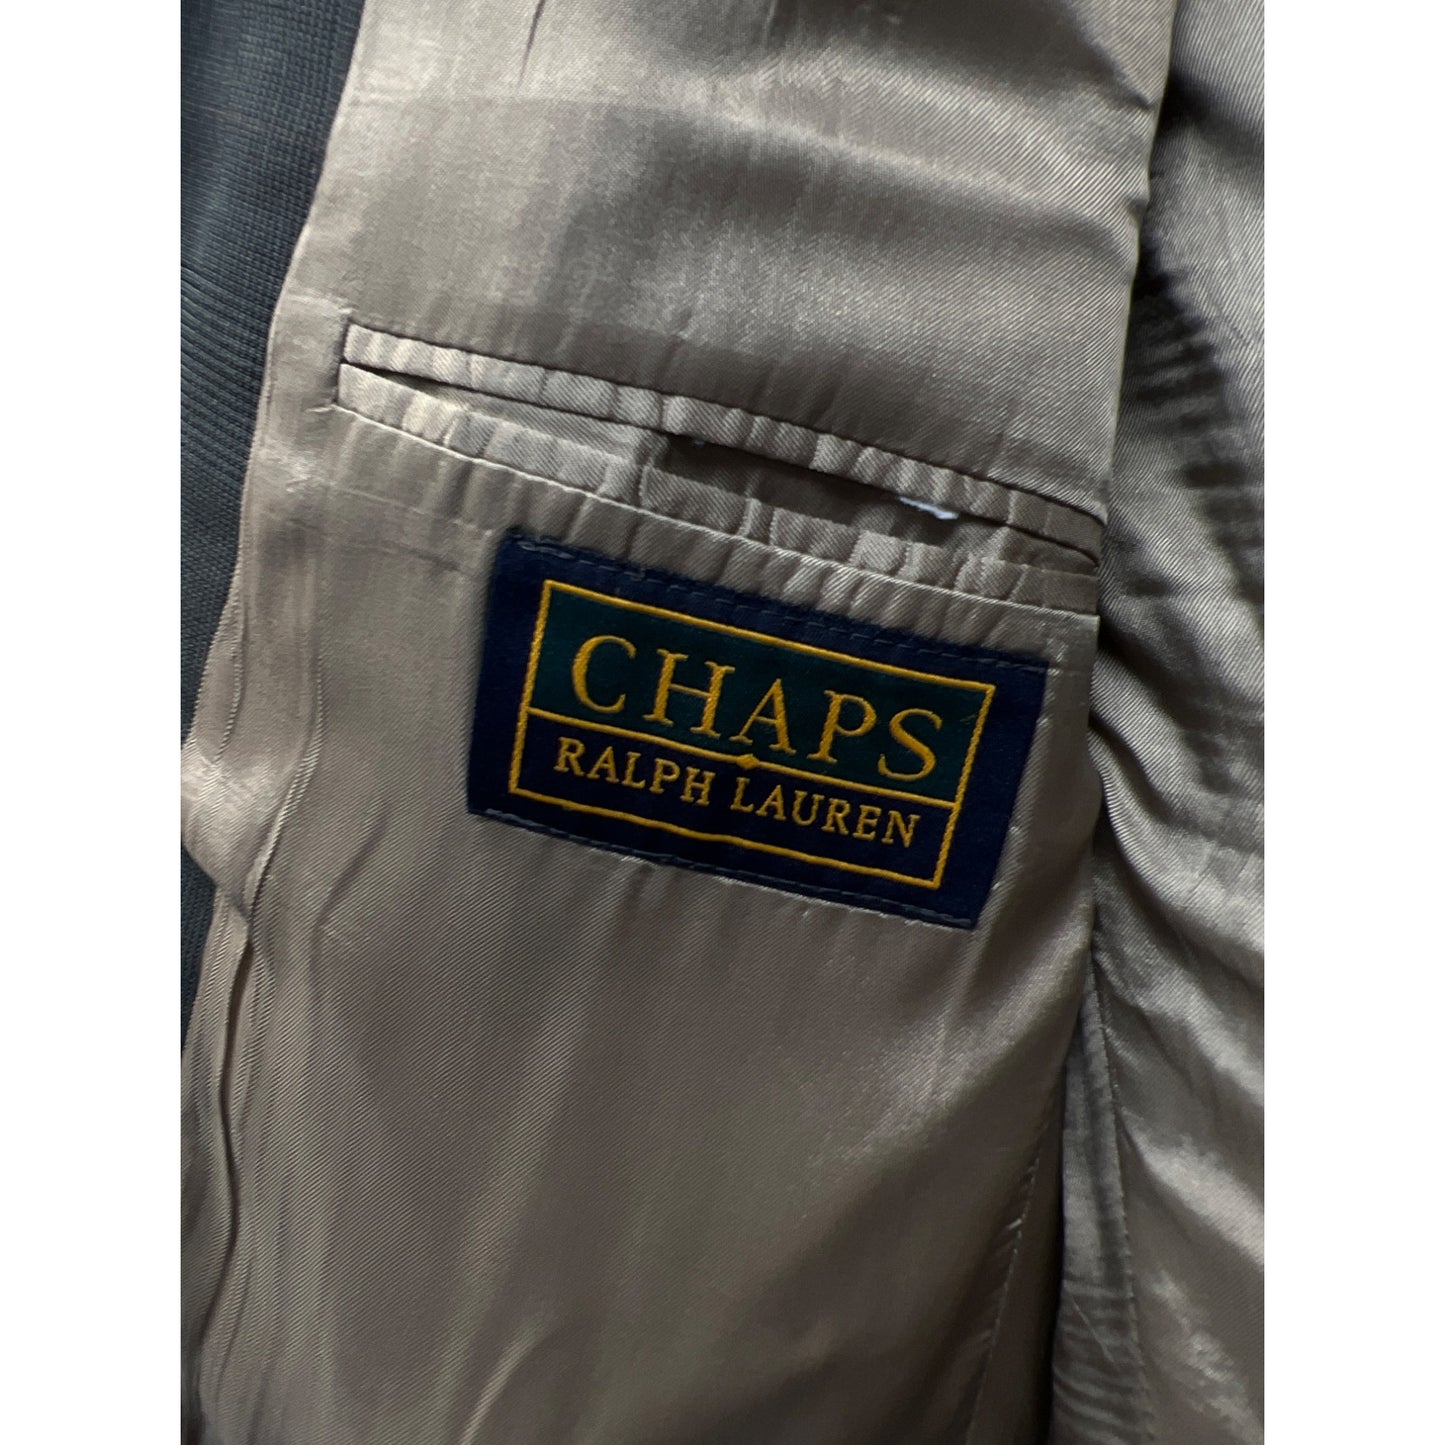 Chaps Ralph Lauren Vintage Gray Taupe Blazer